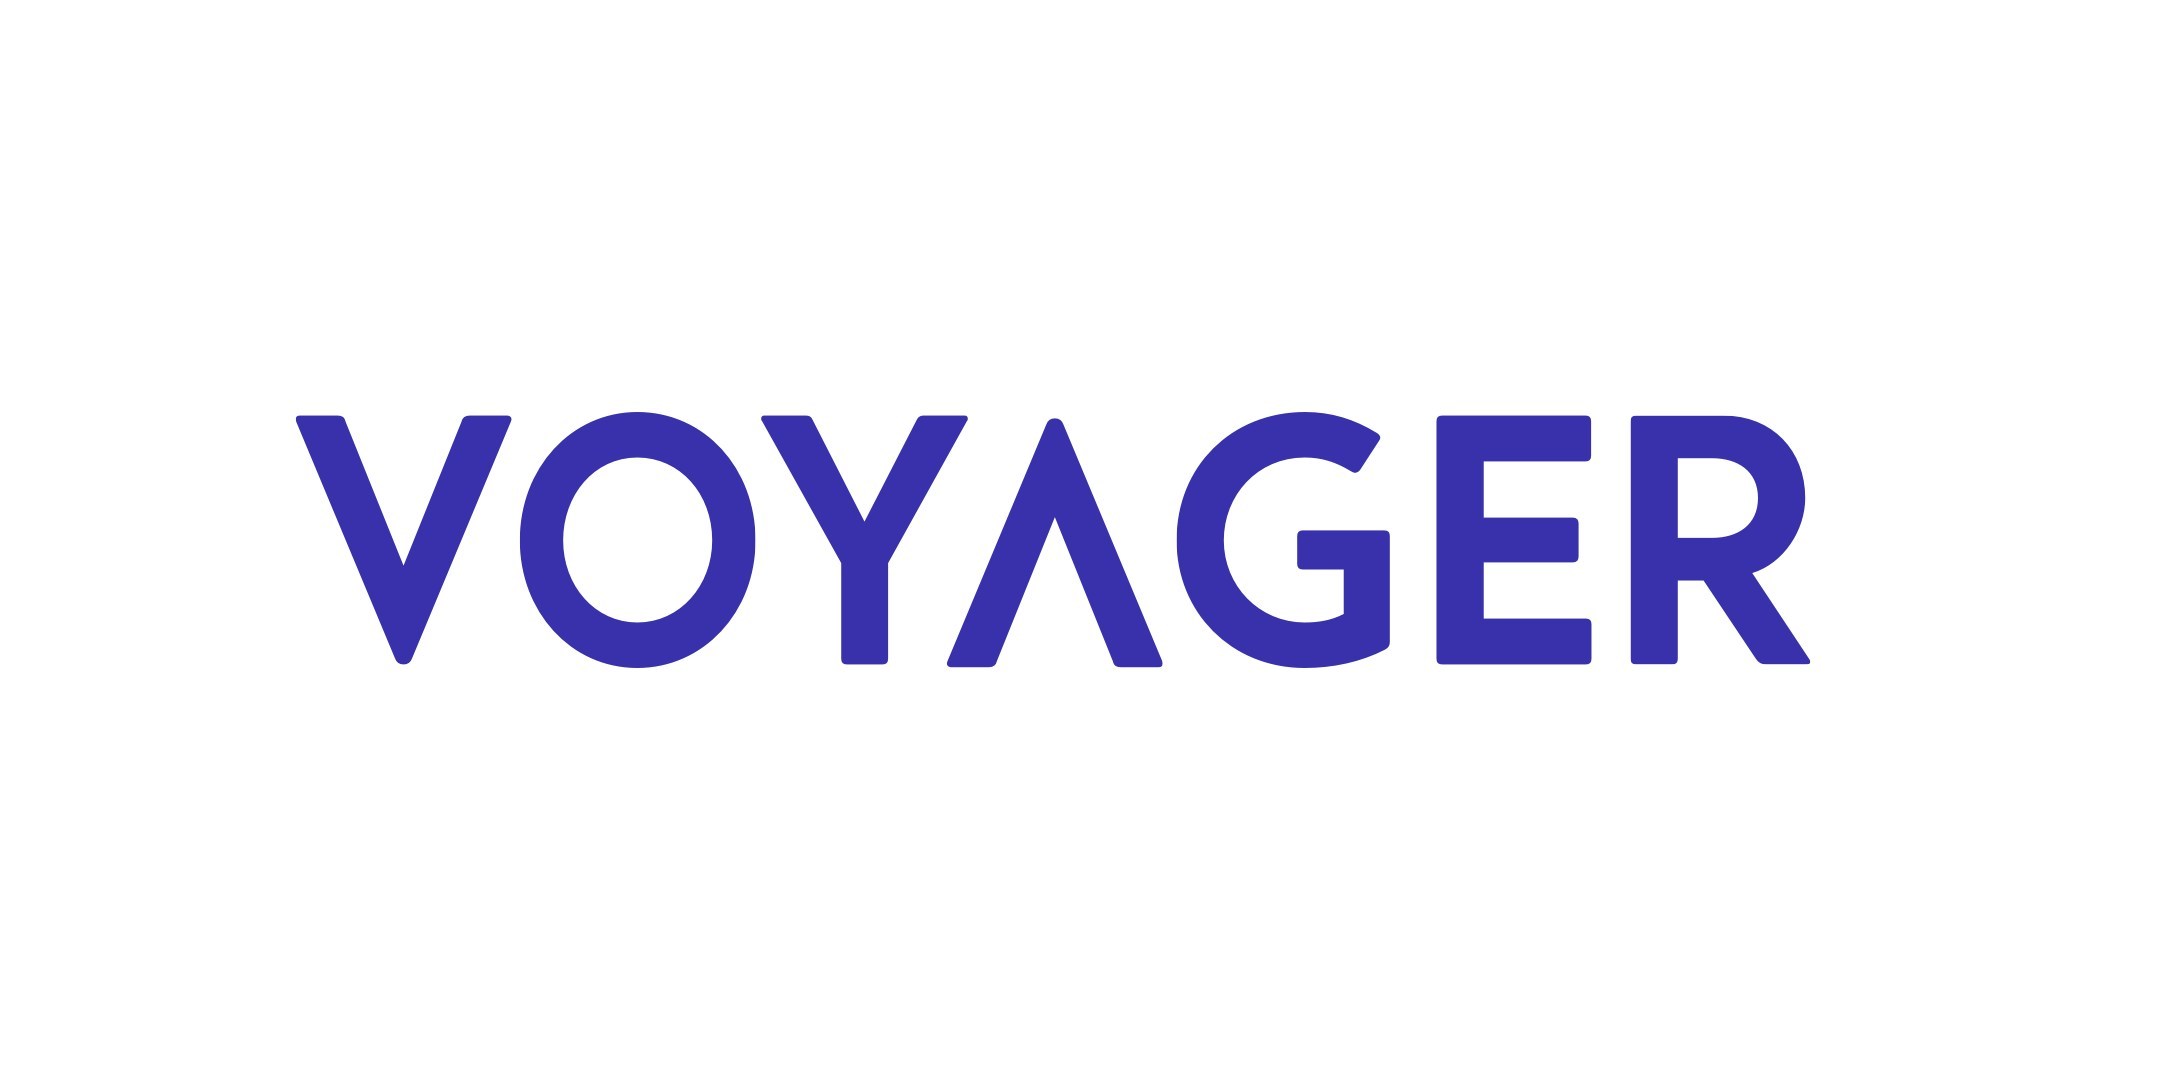 Voyager Digital, Ltd. (CNW Group/Voyager Digital Ltd.)